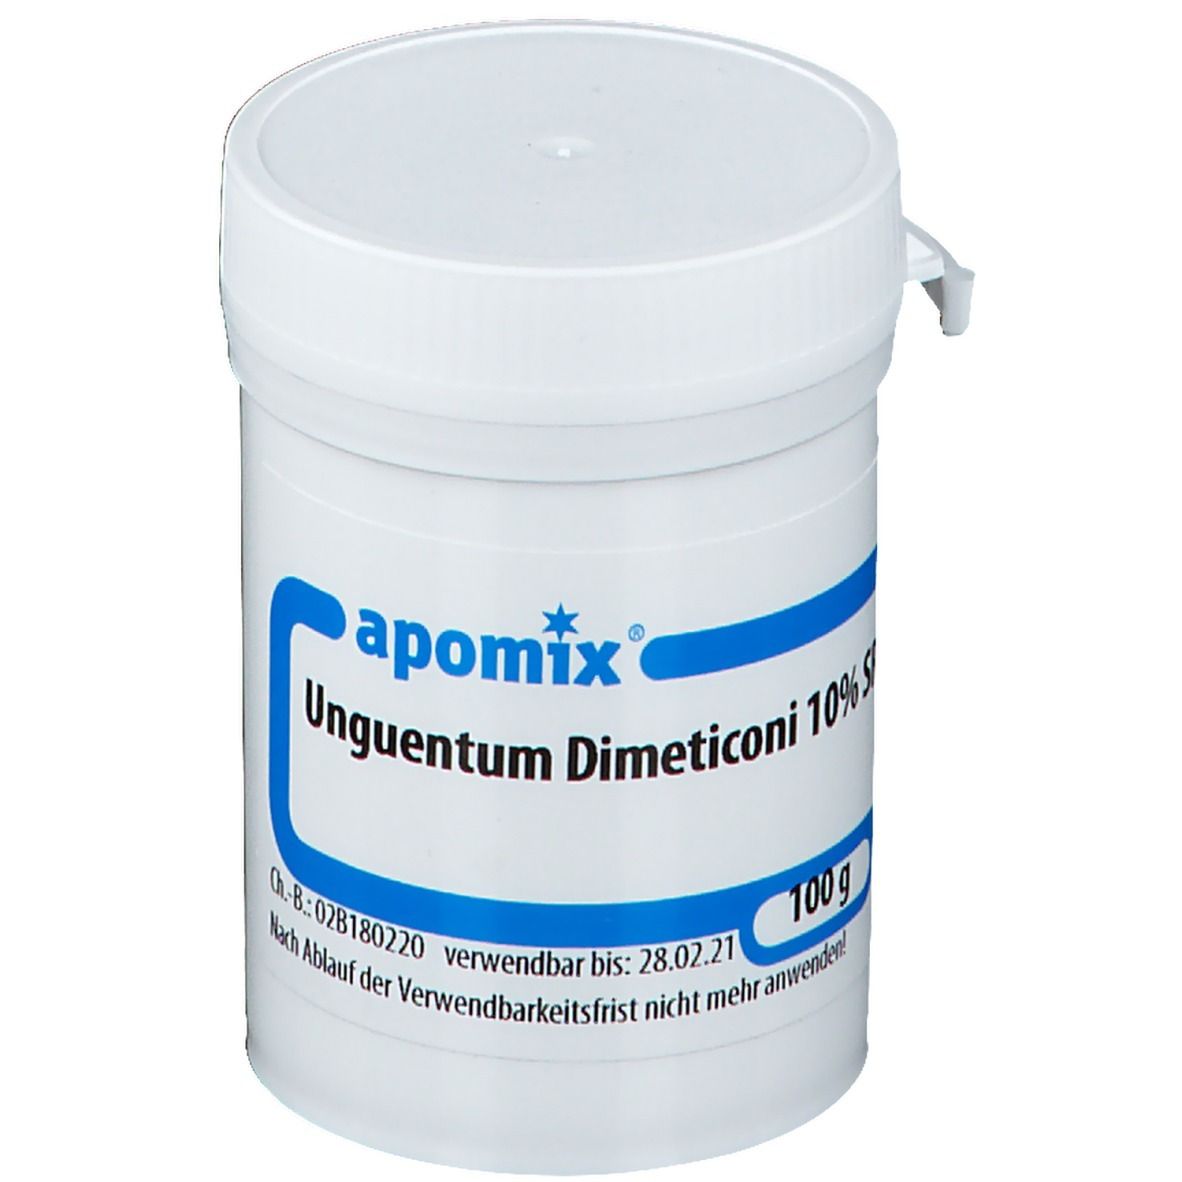 apomix® Unguentum Dimeticon 10 % SR